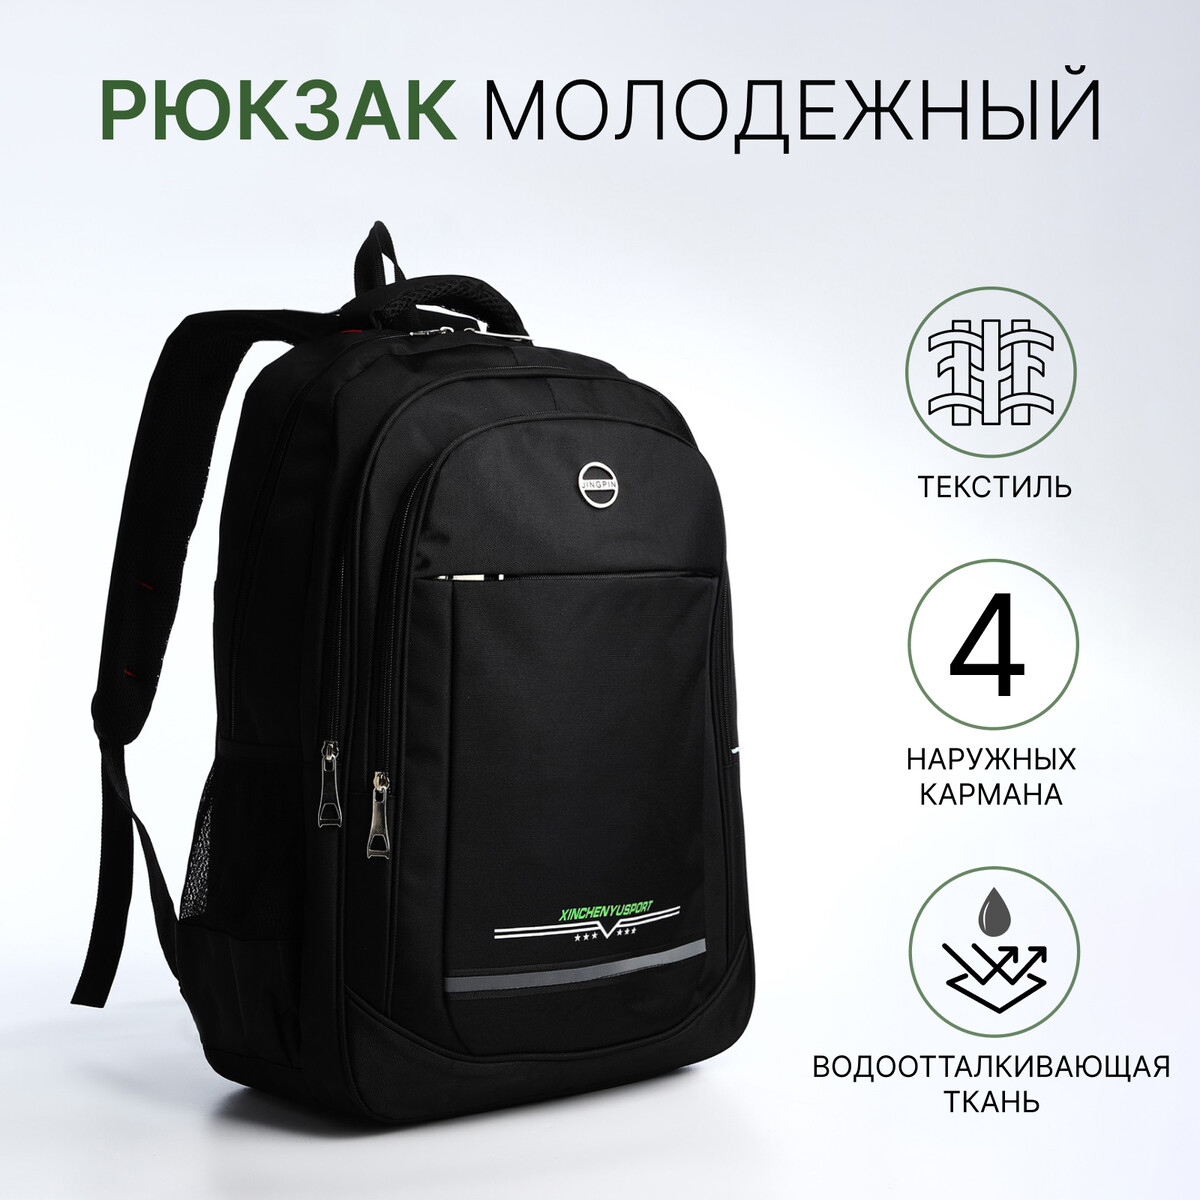 Рюкзак молодежный из текстиля, 2 отдела на молнии, 4 кармана, цвет черный/зеленый